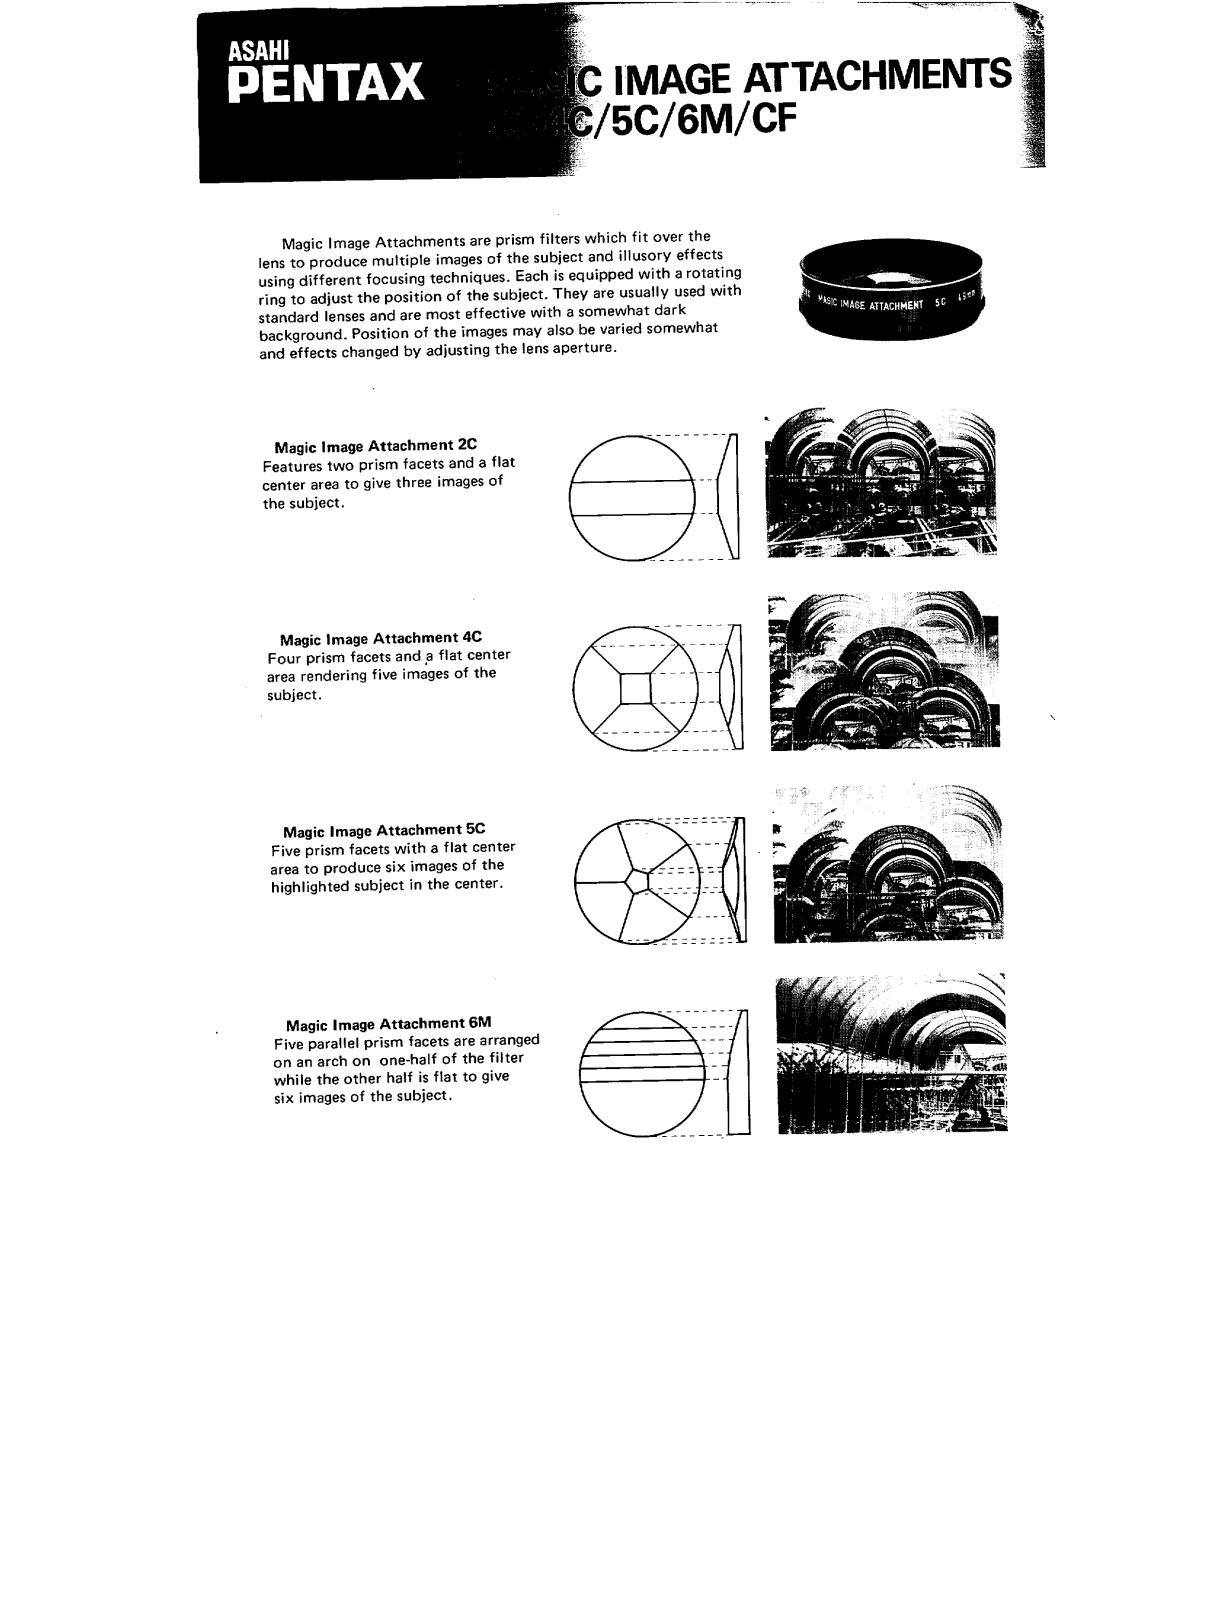 Pentax MAGIC IMAGE ATTACHMENTS 2C, 4C, 5C, 6M, CF Operating Manual